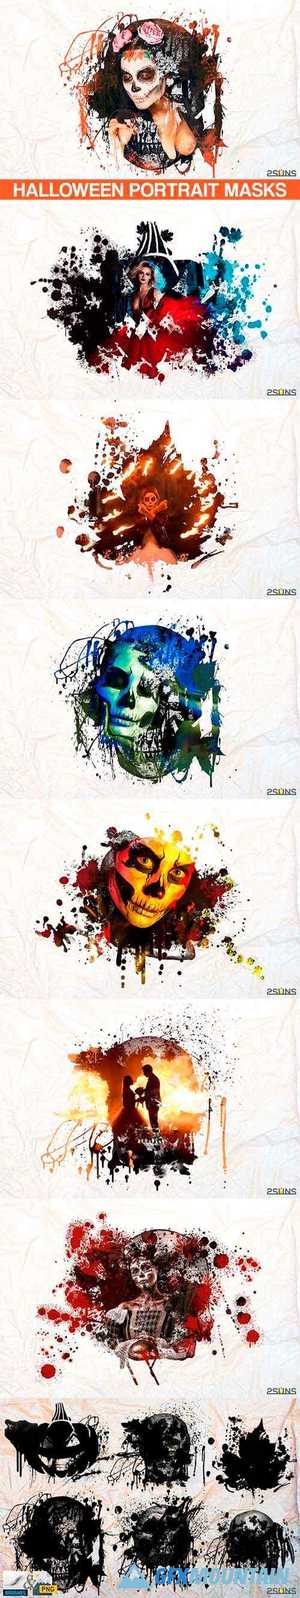 20 Beautiful portrait paint masks, halloween, Photoshop Overlays  